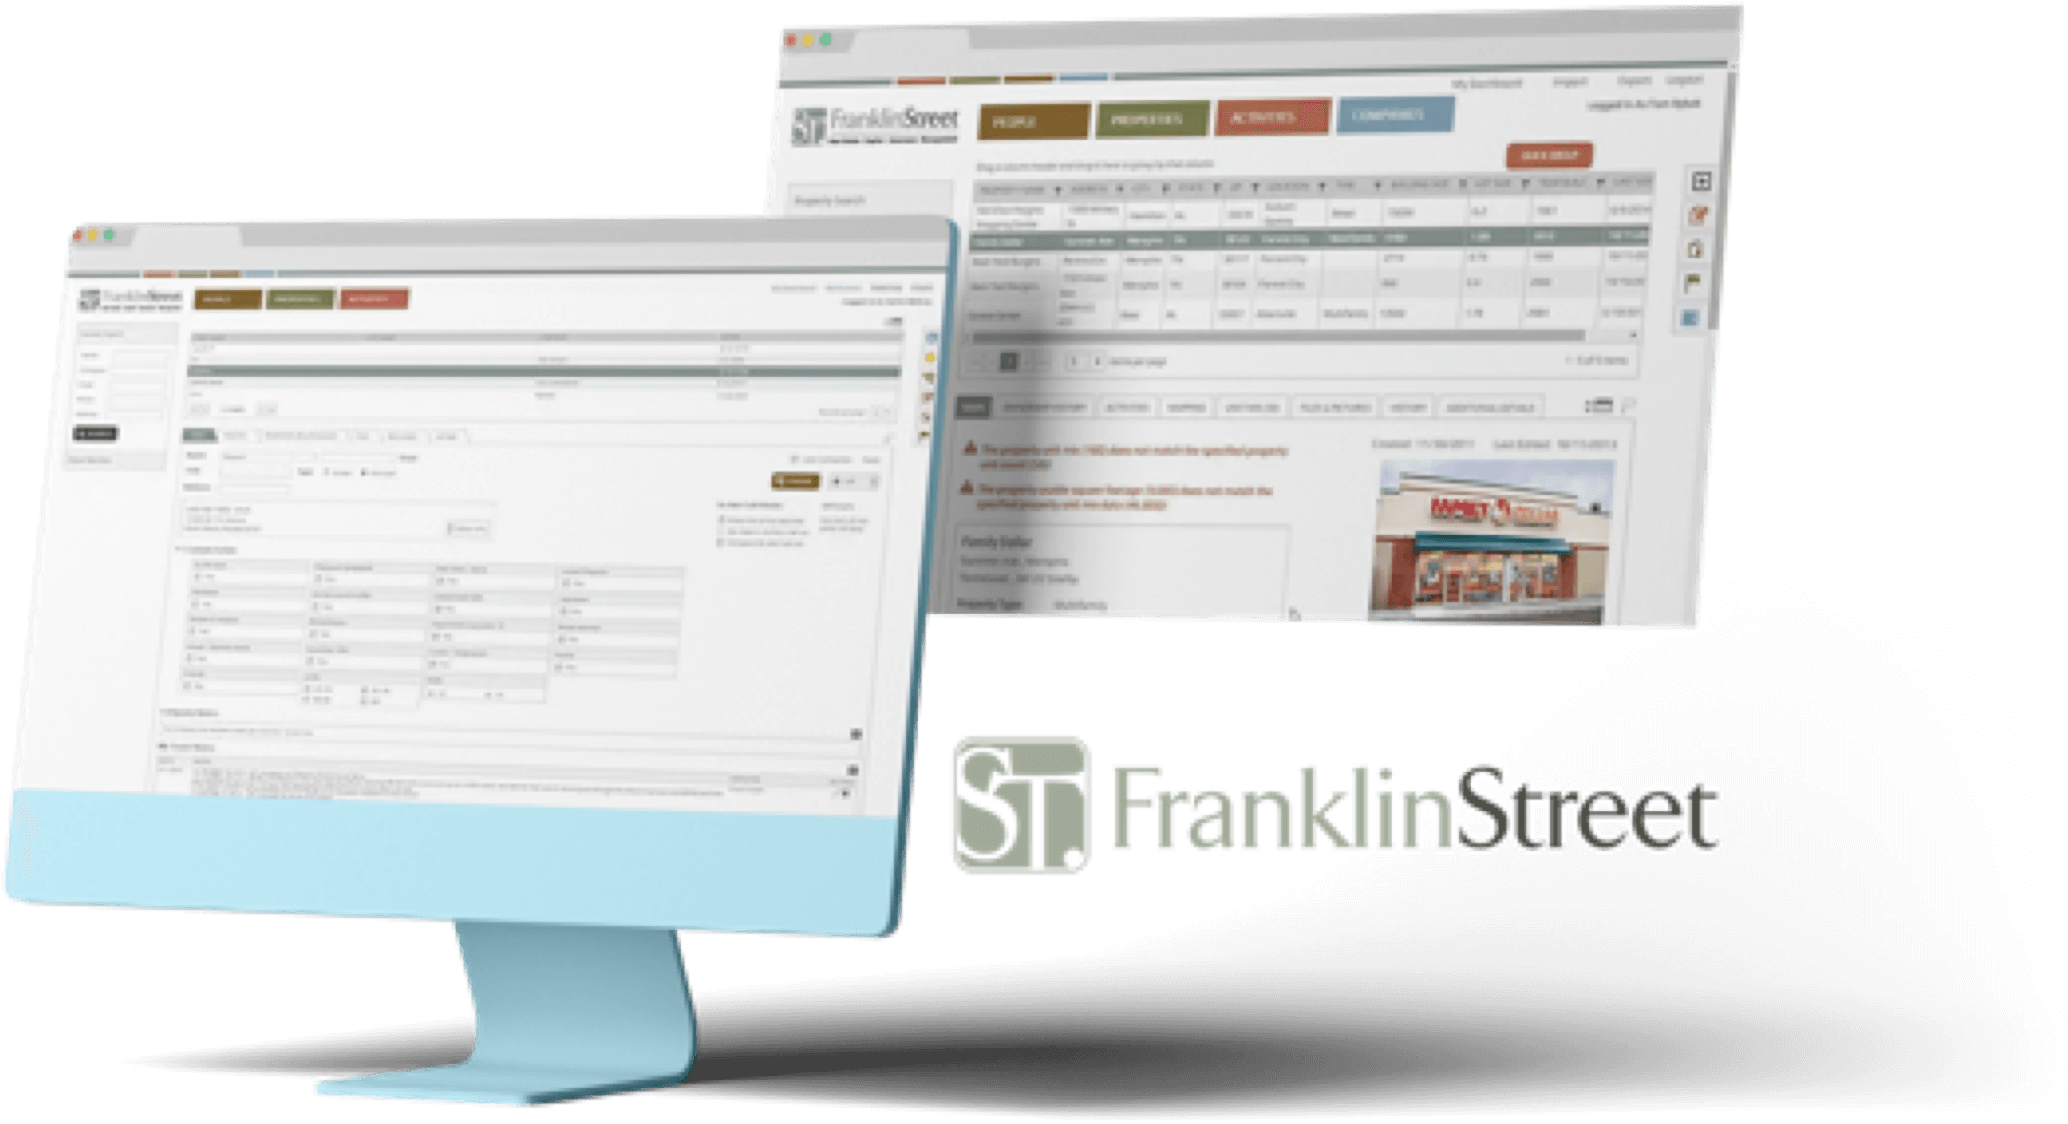 Display of Franklin St Website